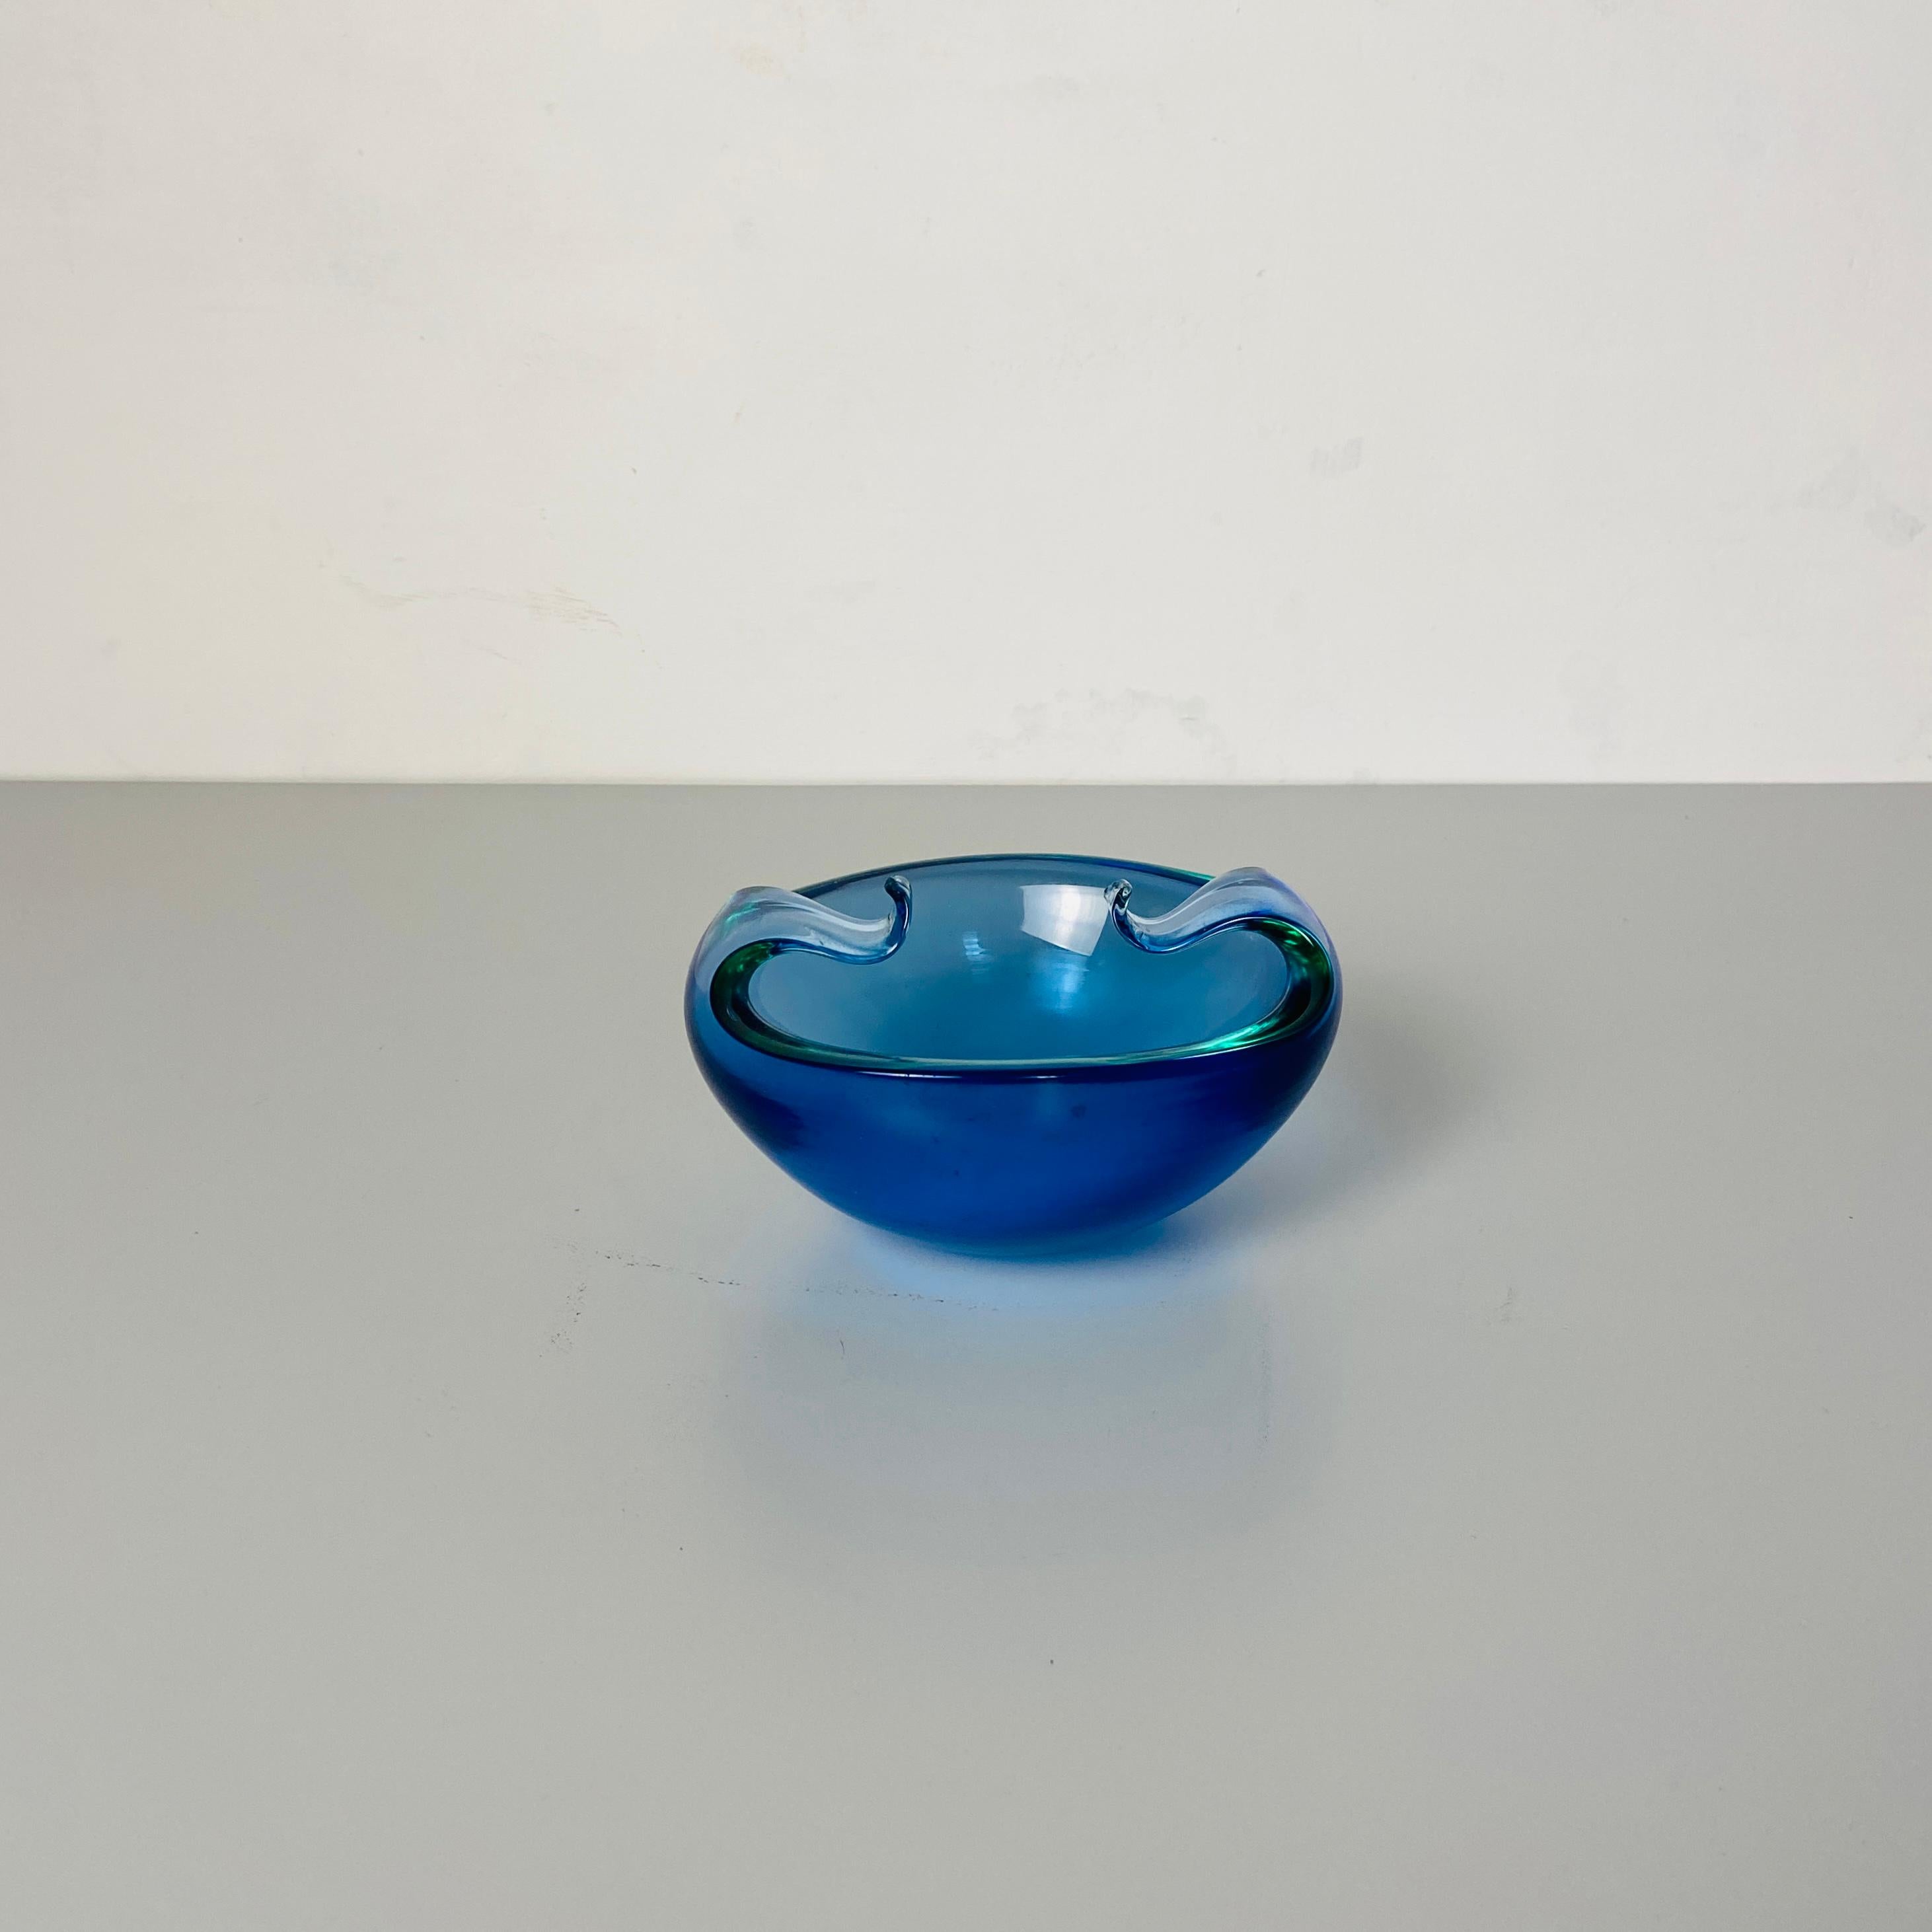 Italienischer Objekthalter aus Muranoglas mit geschwungenen Armen aus der Mitte des Jahrhunderts, 1970er Jahre
Objekthalter aus blauem Muranoglas in Blau- und Grüntönen, mit zwei geschwungenen Armen an der Spitze.
Dies ist ein perfektes Detail kann